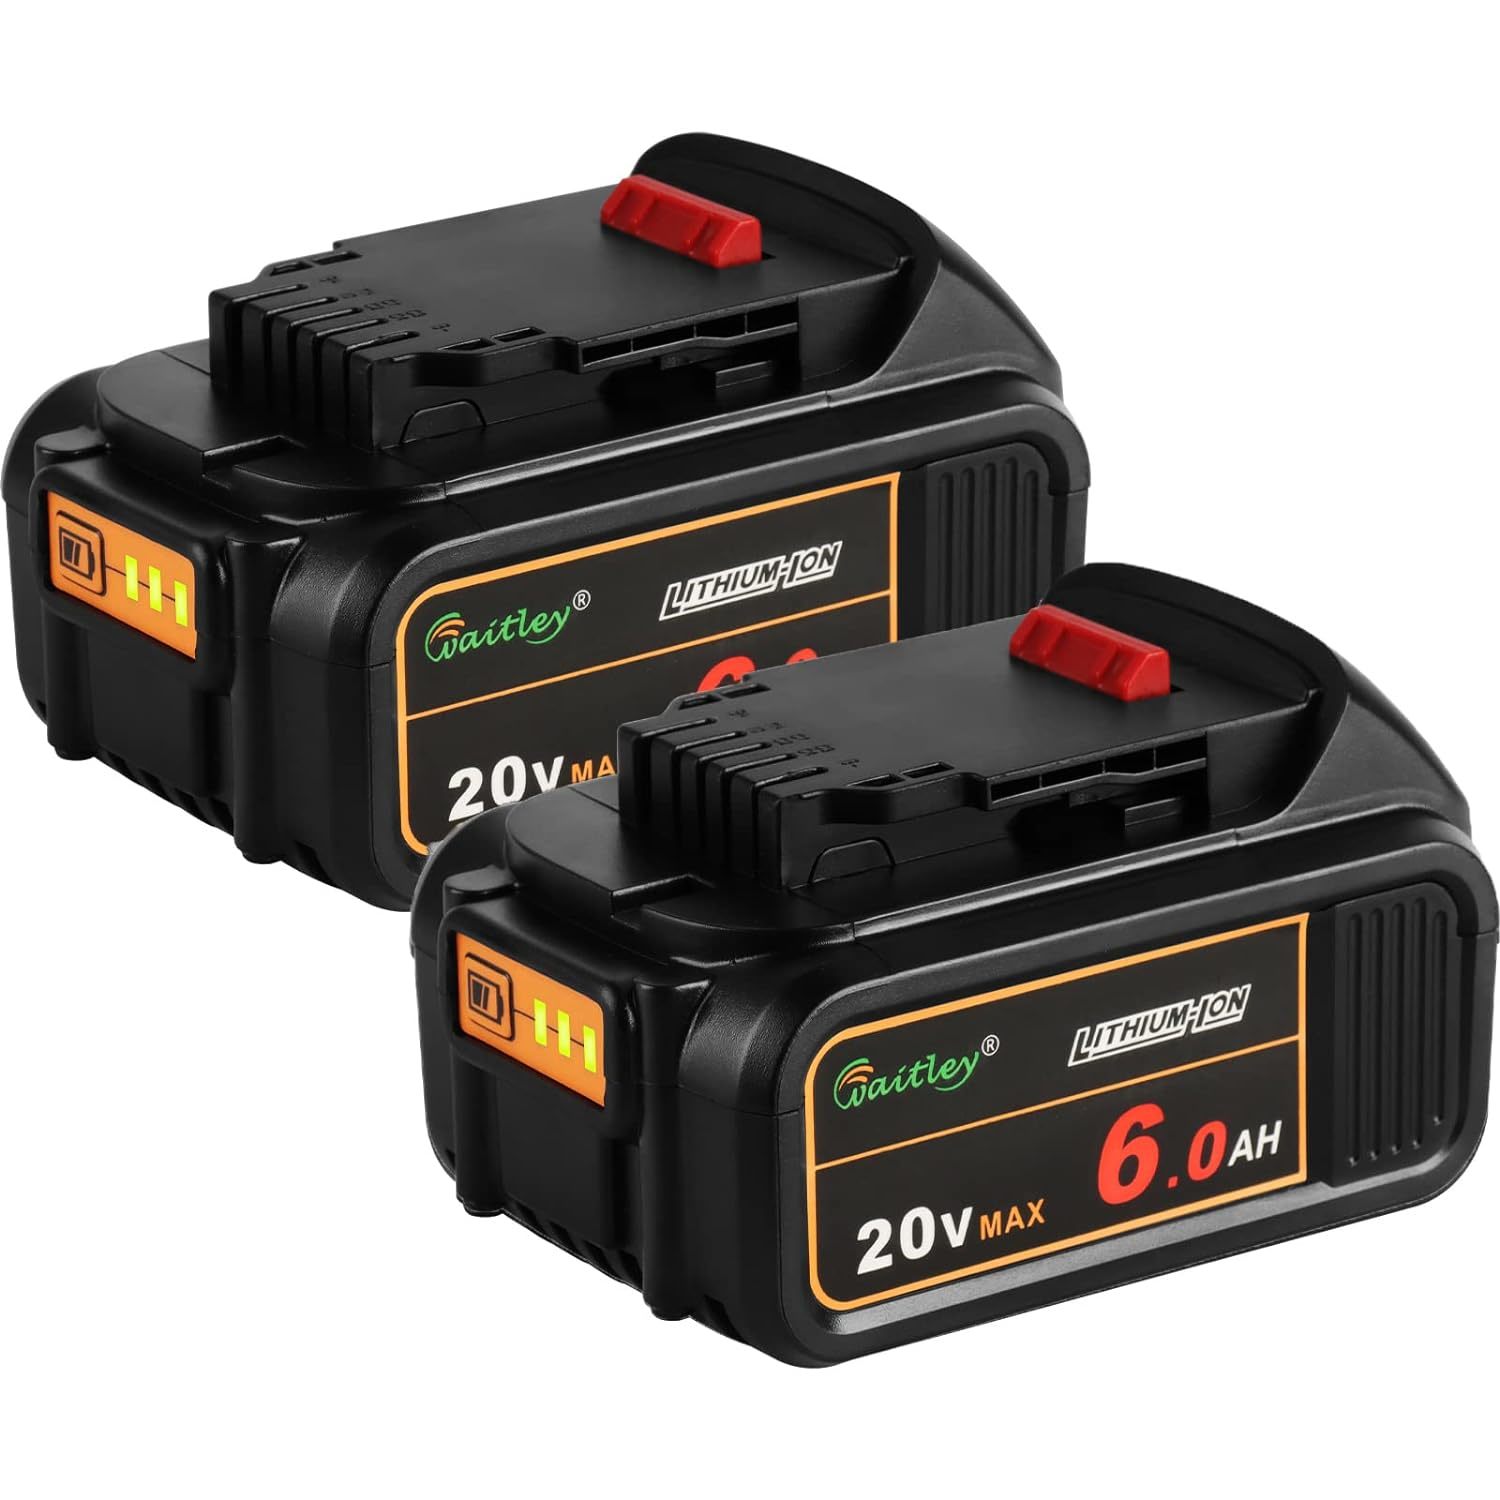 2 Pack Dcb206 20V Max 6.0Ah Replacement Battery Compatible With Dewalt 20V Batte - $101.99